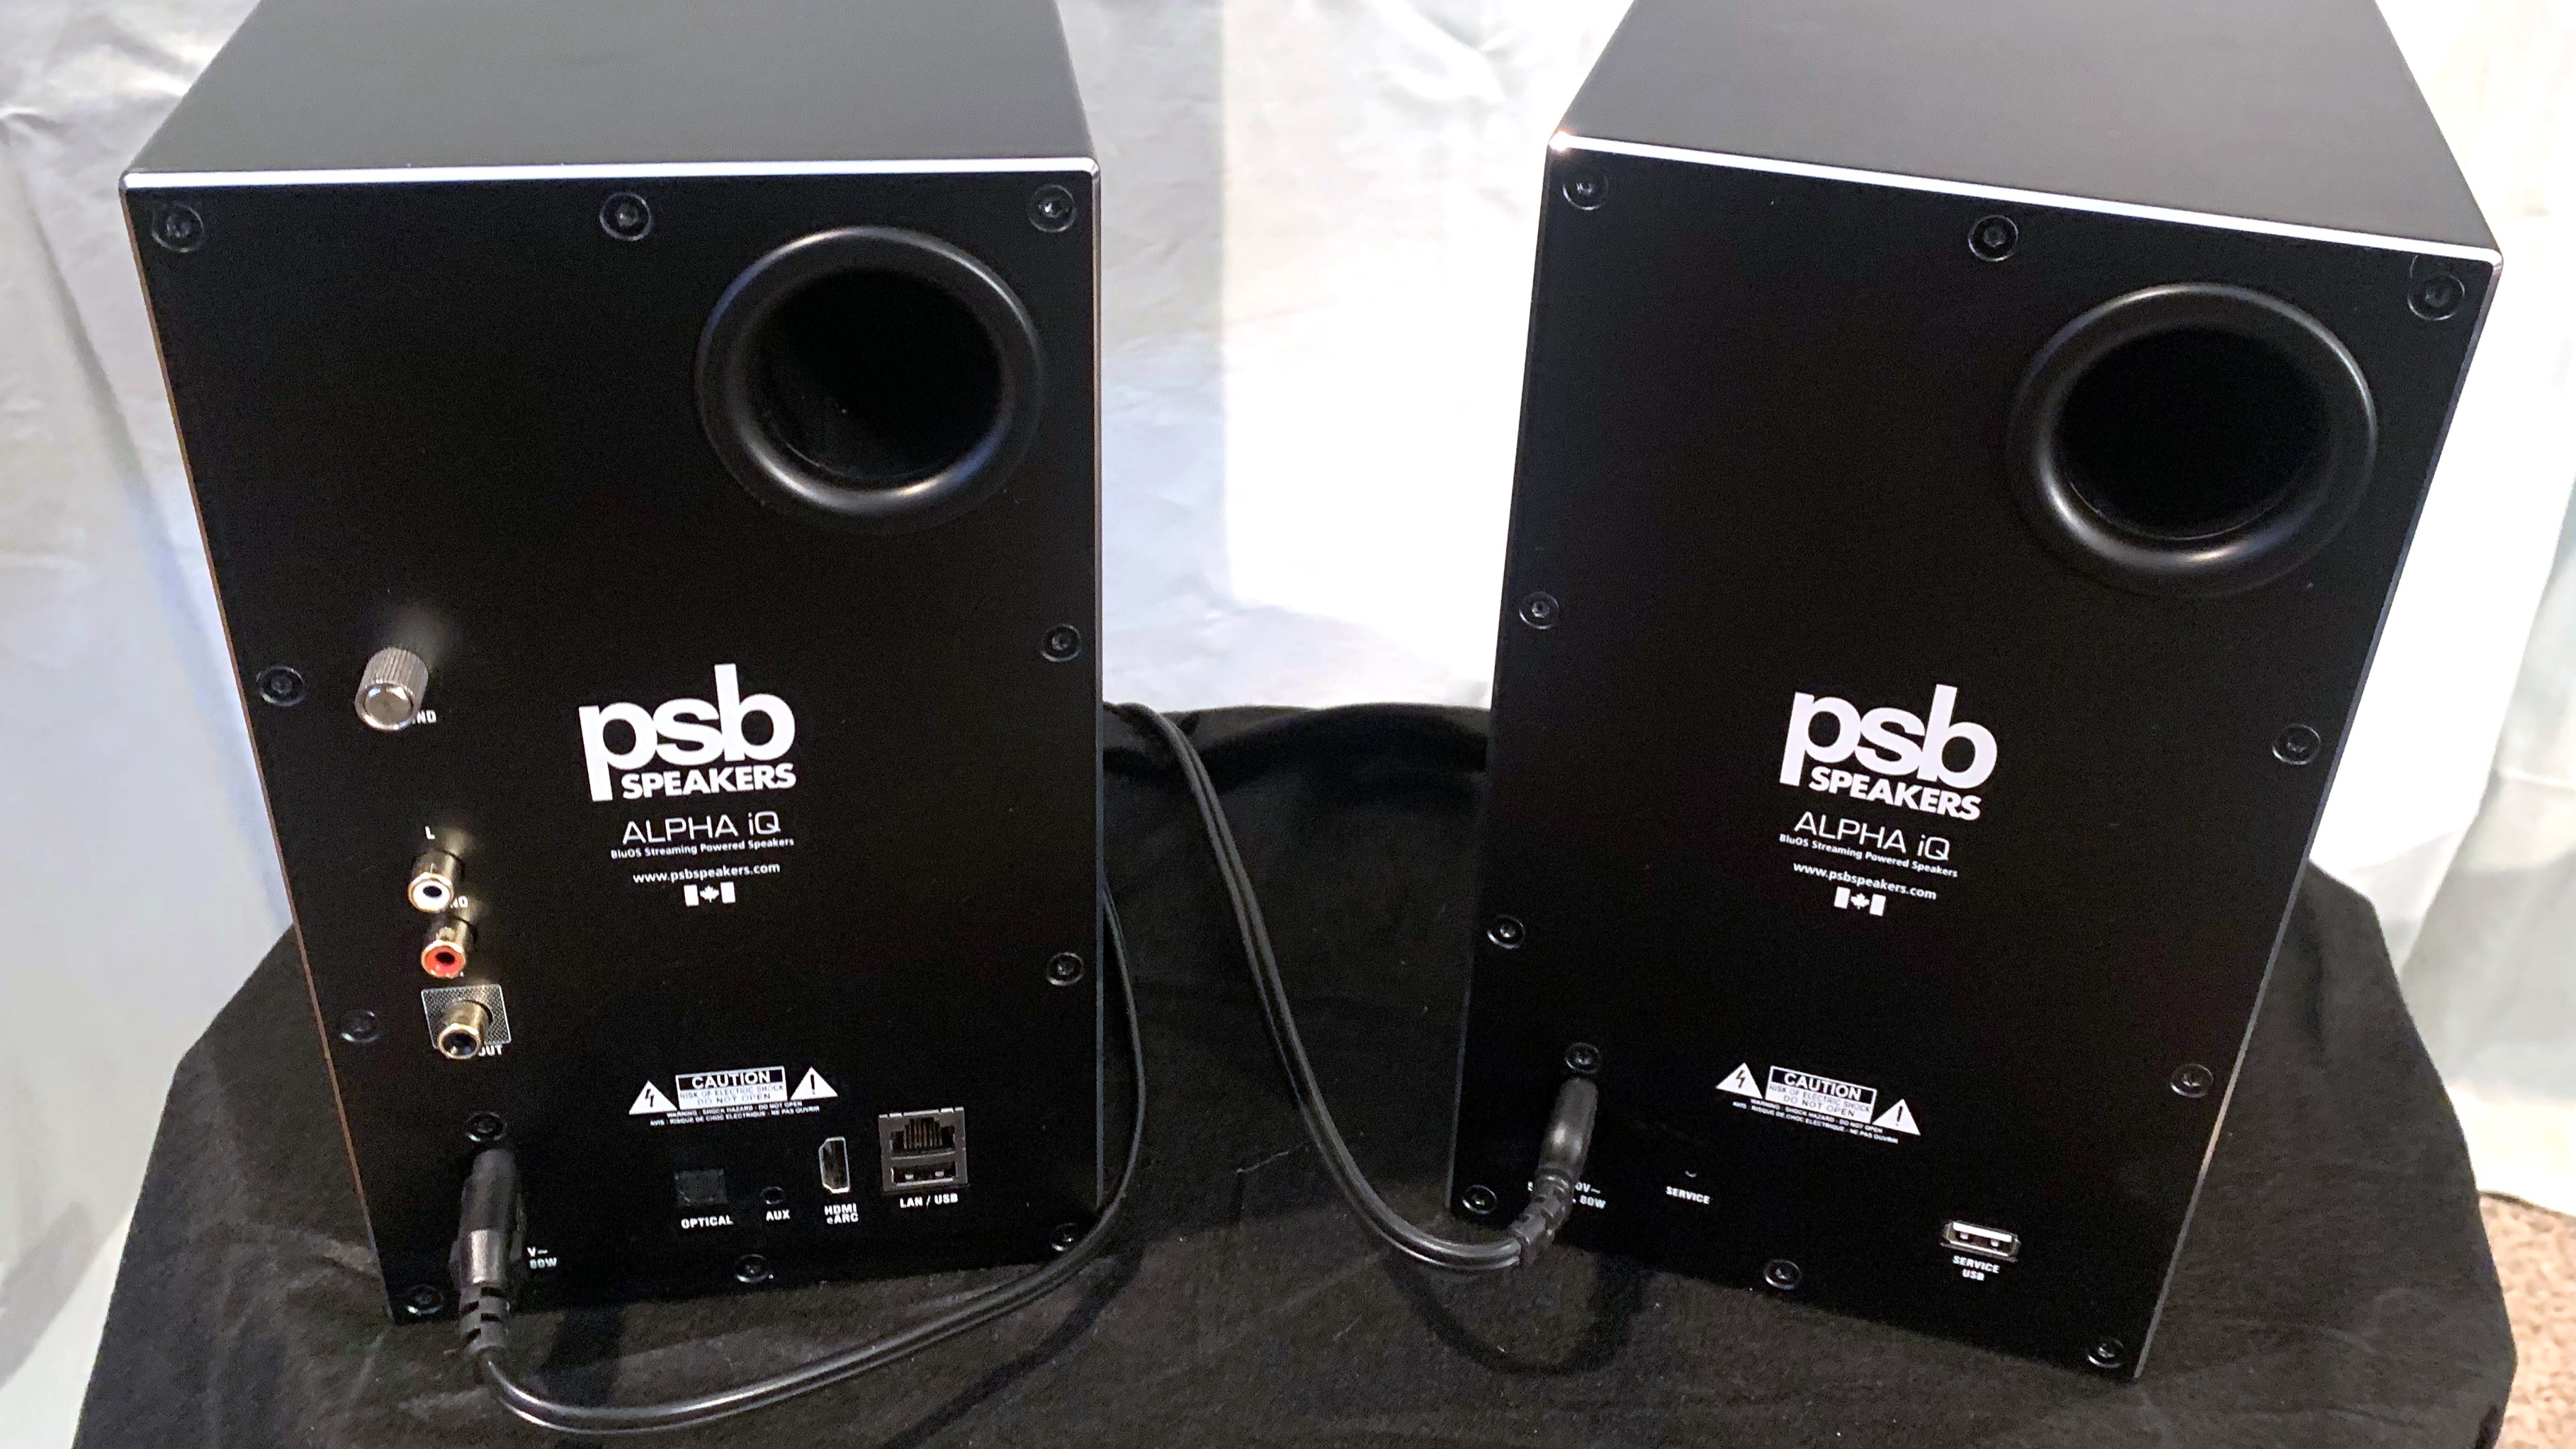 PSB Alpha iQ wireless speakers back views